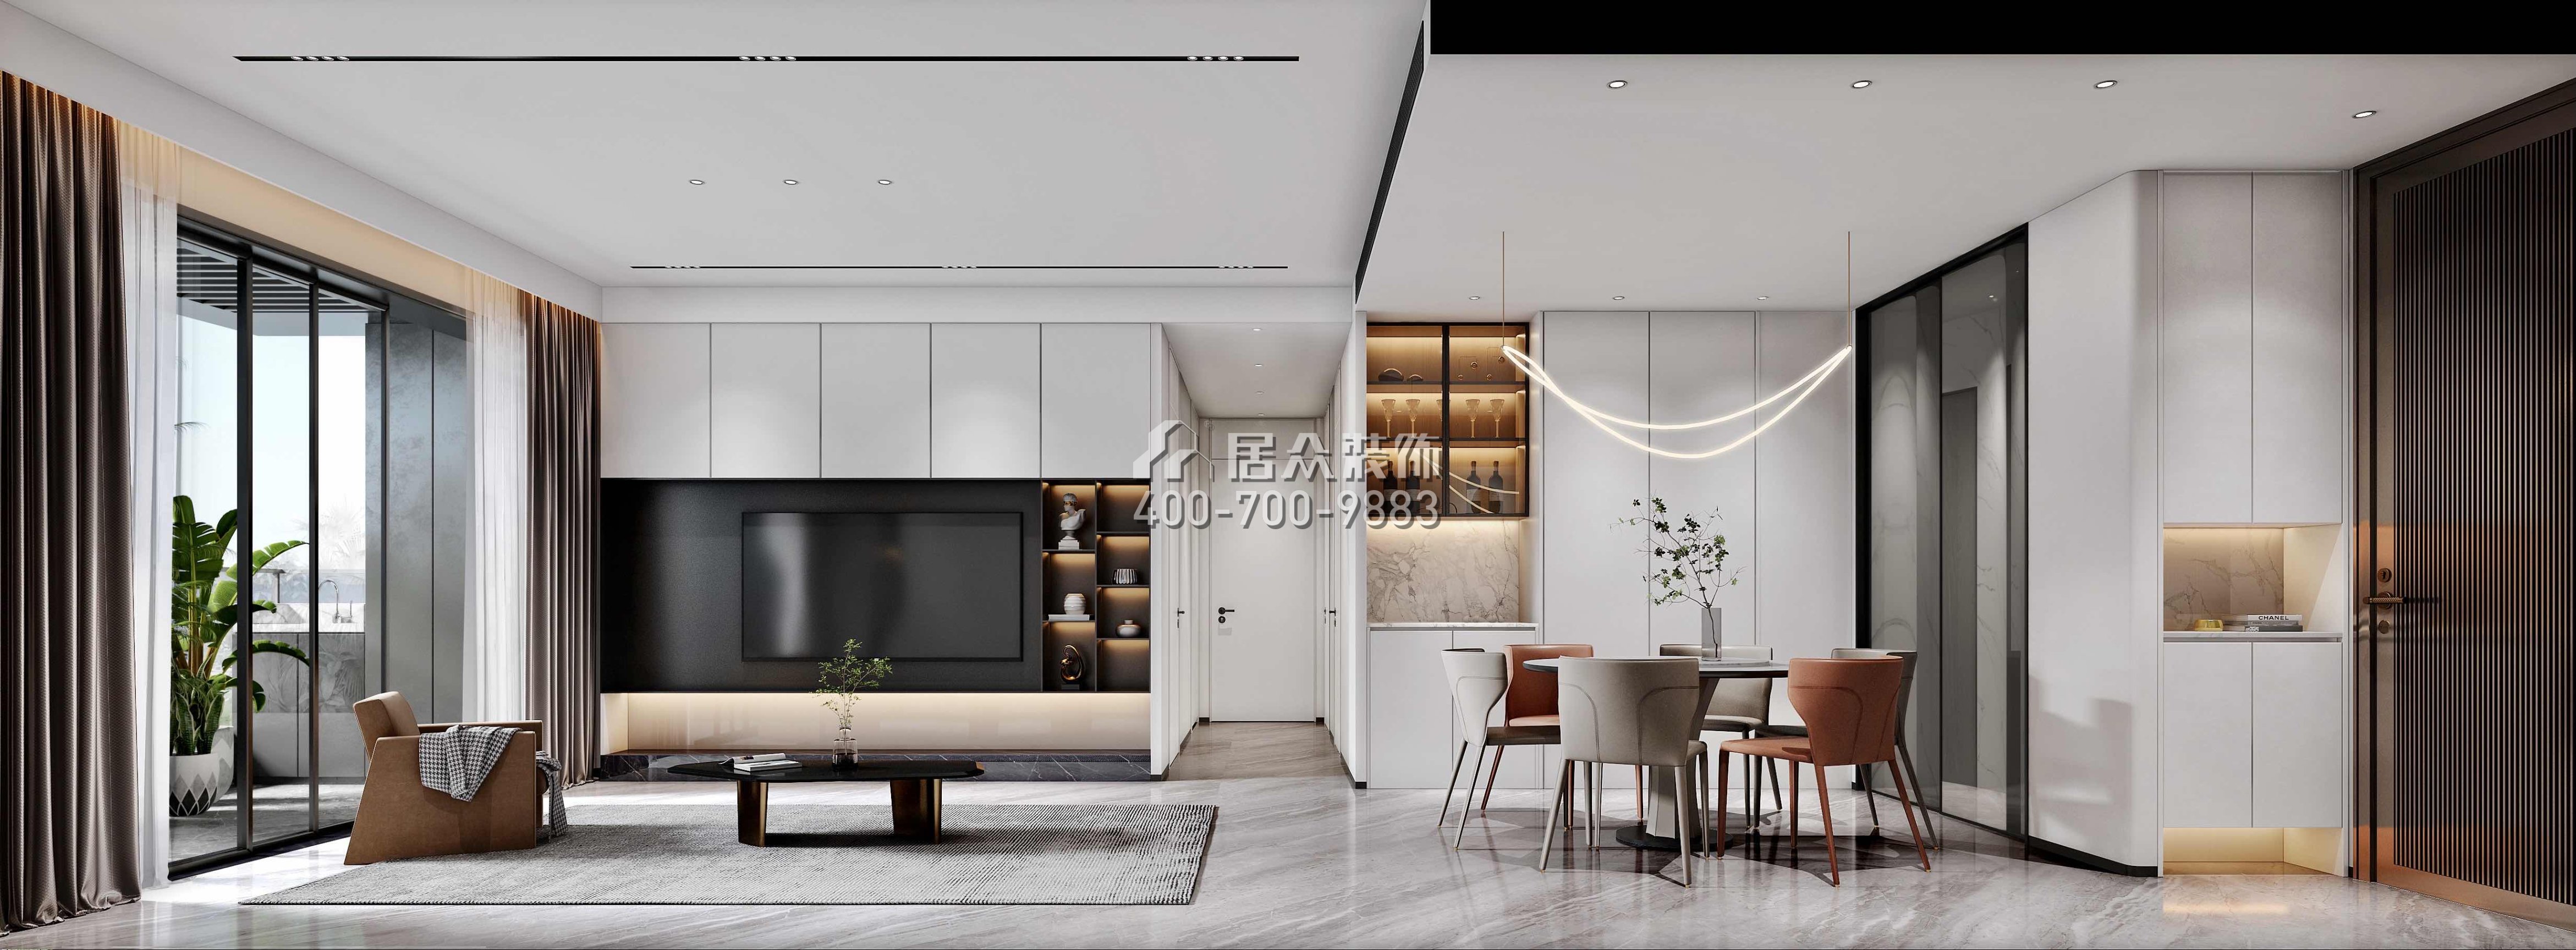 天健天驕南苑120平方米現代簡約風格平層戶型客廳裝修效果圖